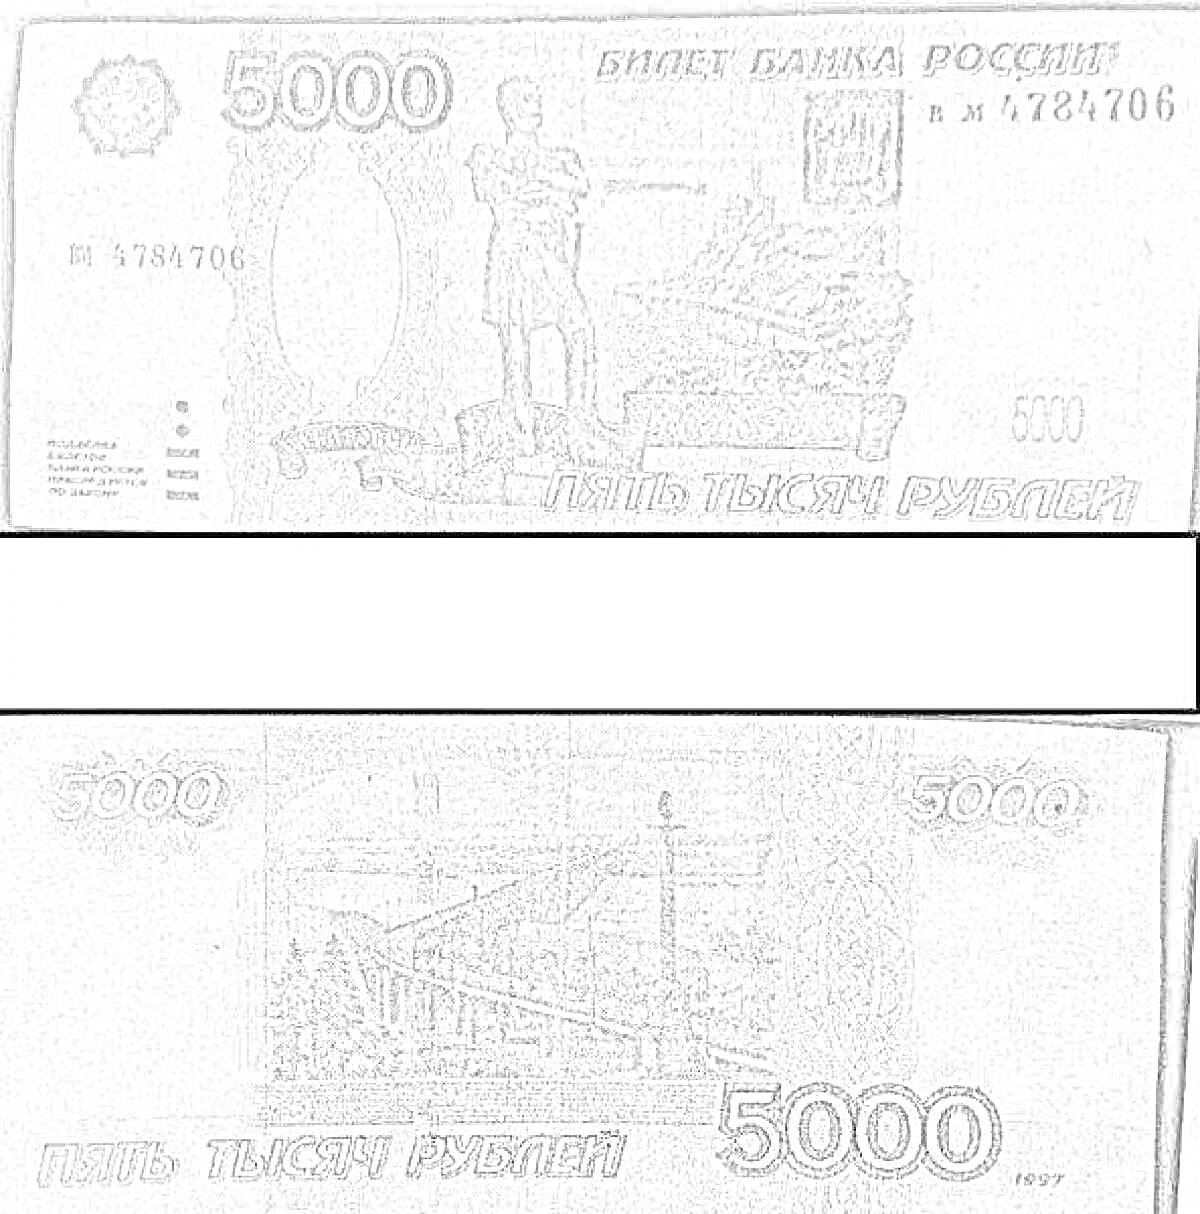 Российская купюра 5000 рублей с изображением памятника Невельскому (лицевая сторона) и изображения моста через реку Амур (оборотная сторона)